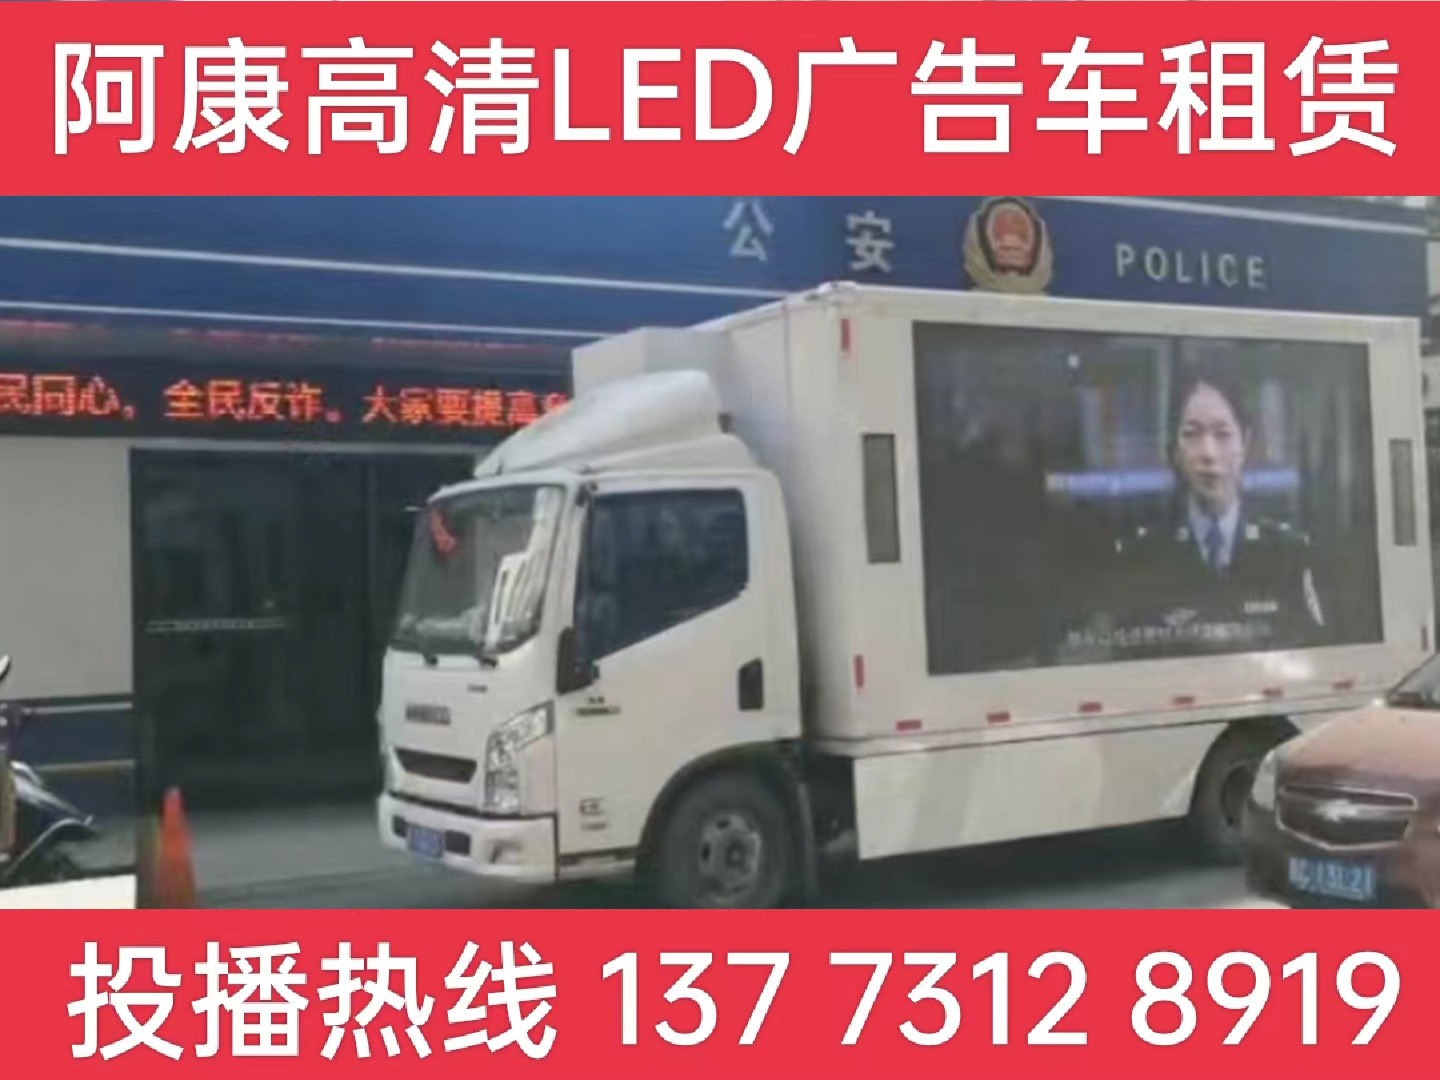 润州区LED广告车租赁-反诈宣传